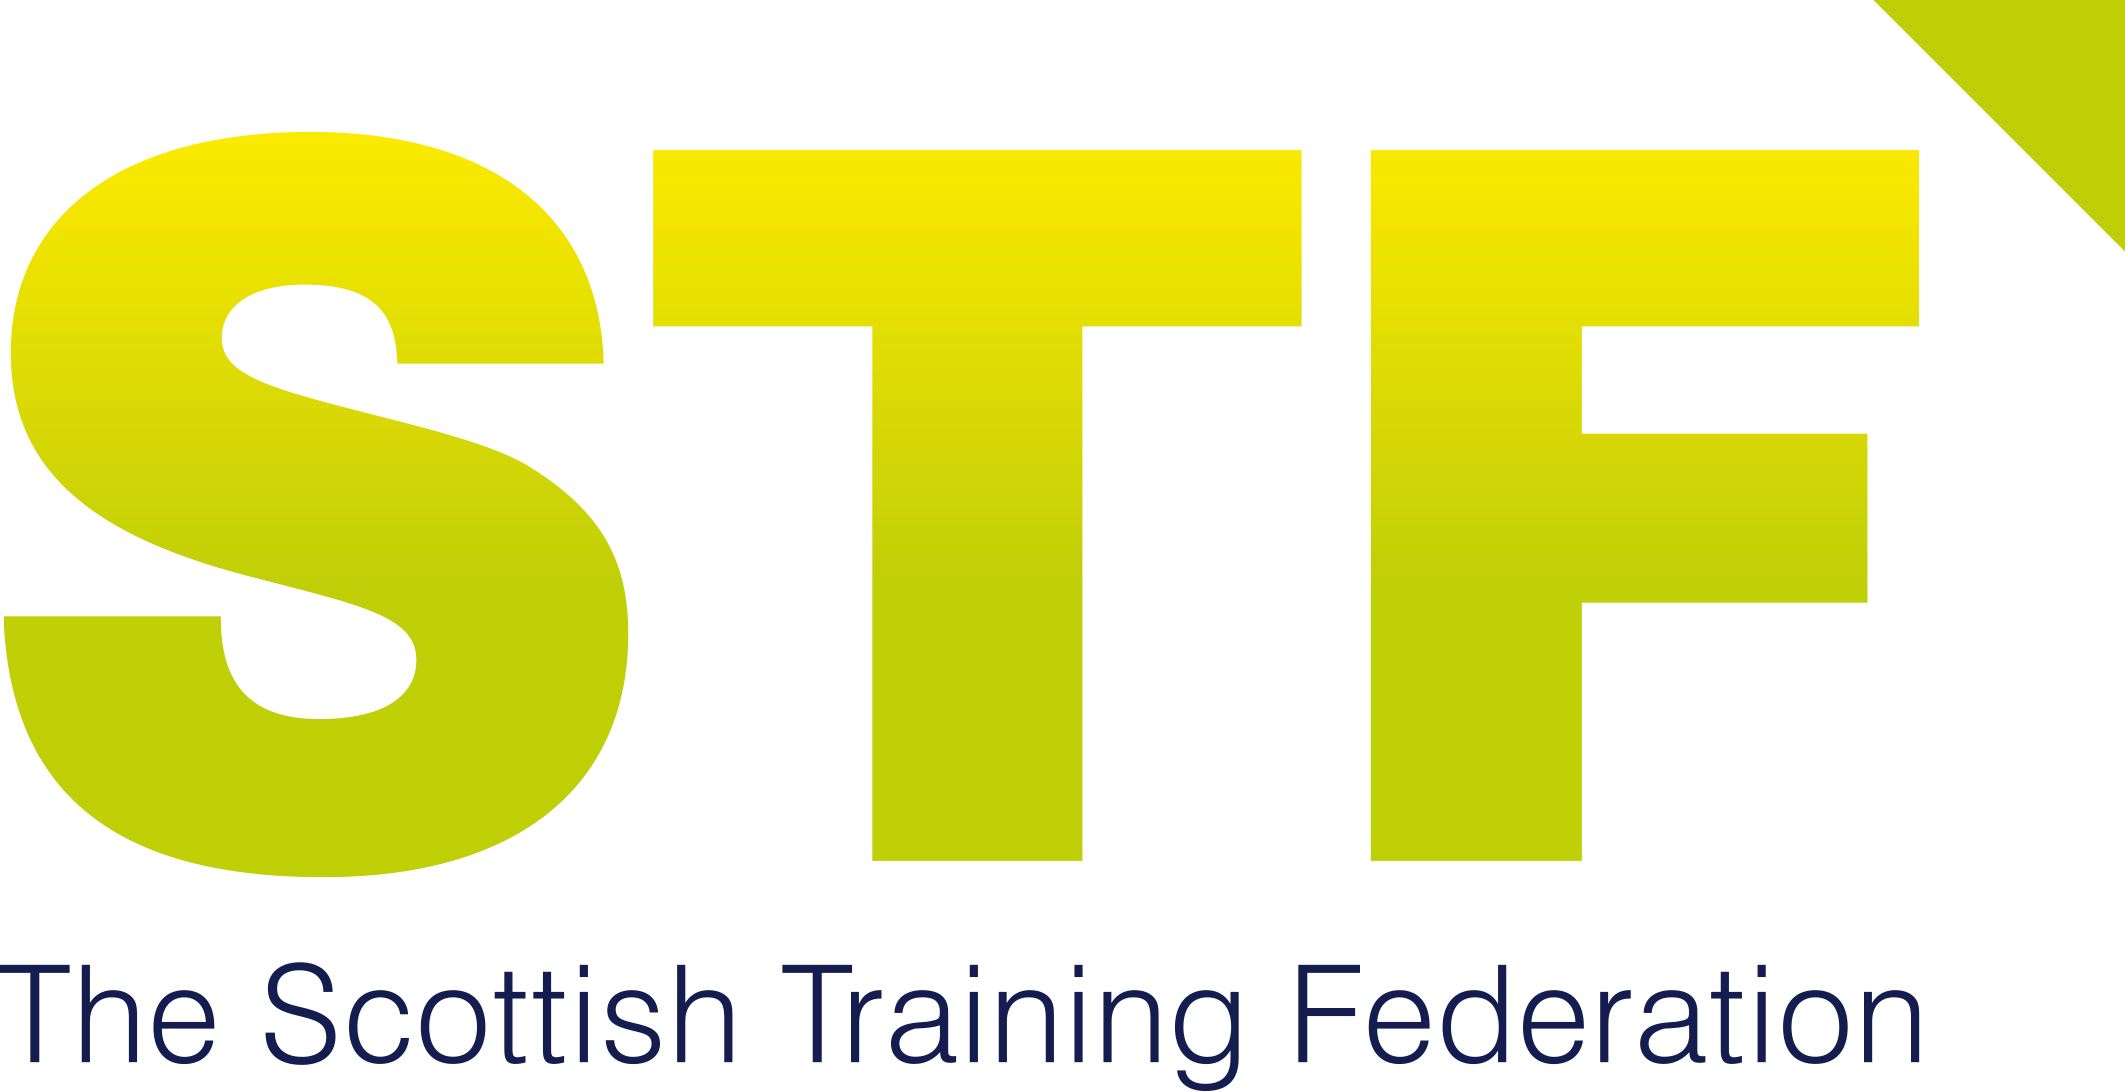 Scottish training federation logo